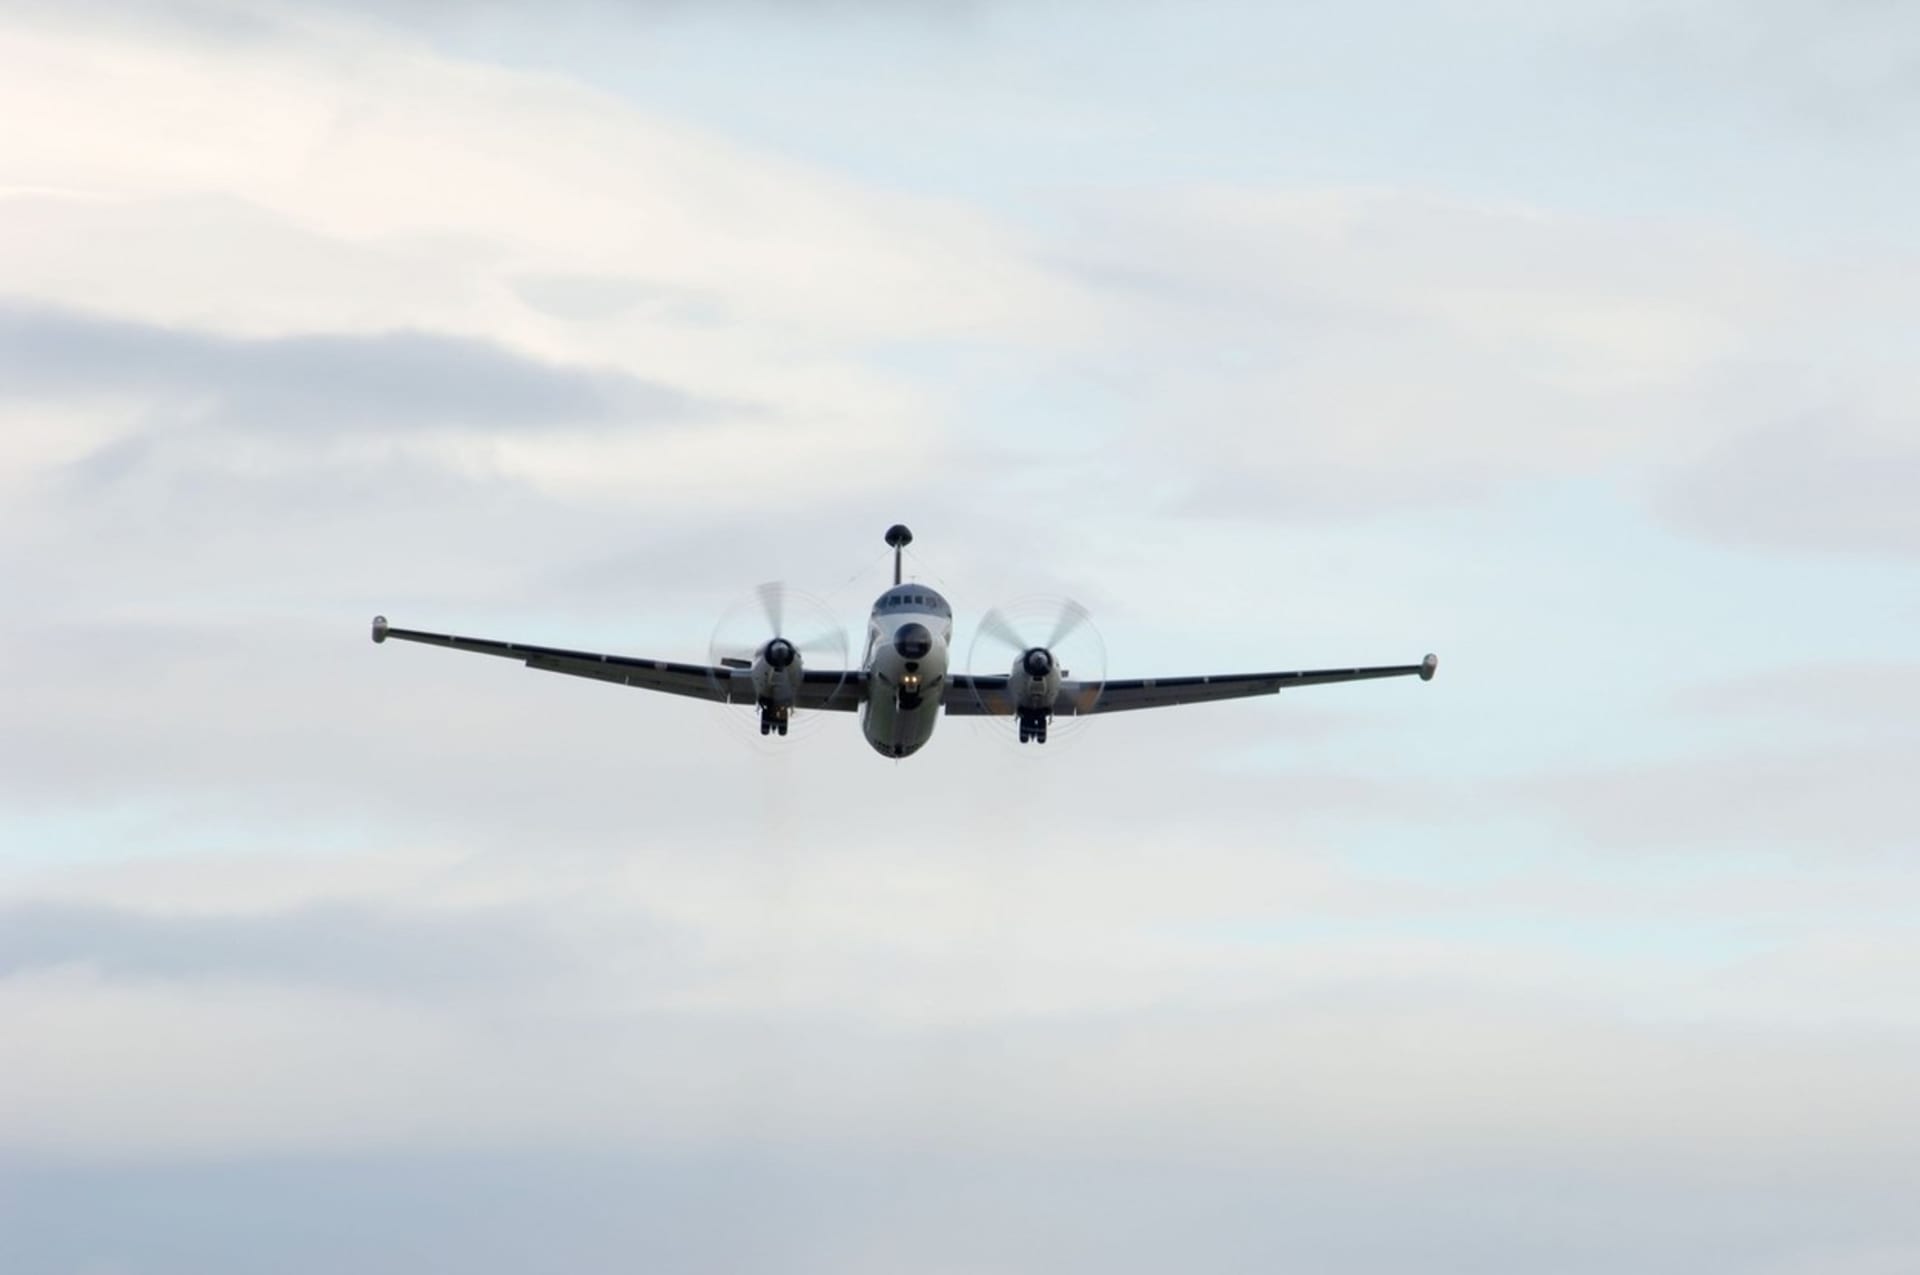 Atlantique 2 doznal výrazné změny ohledně avioniky a vybavení